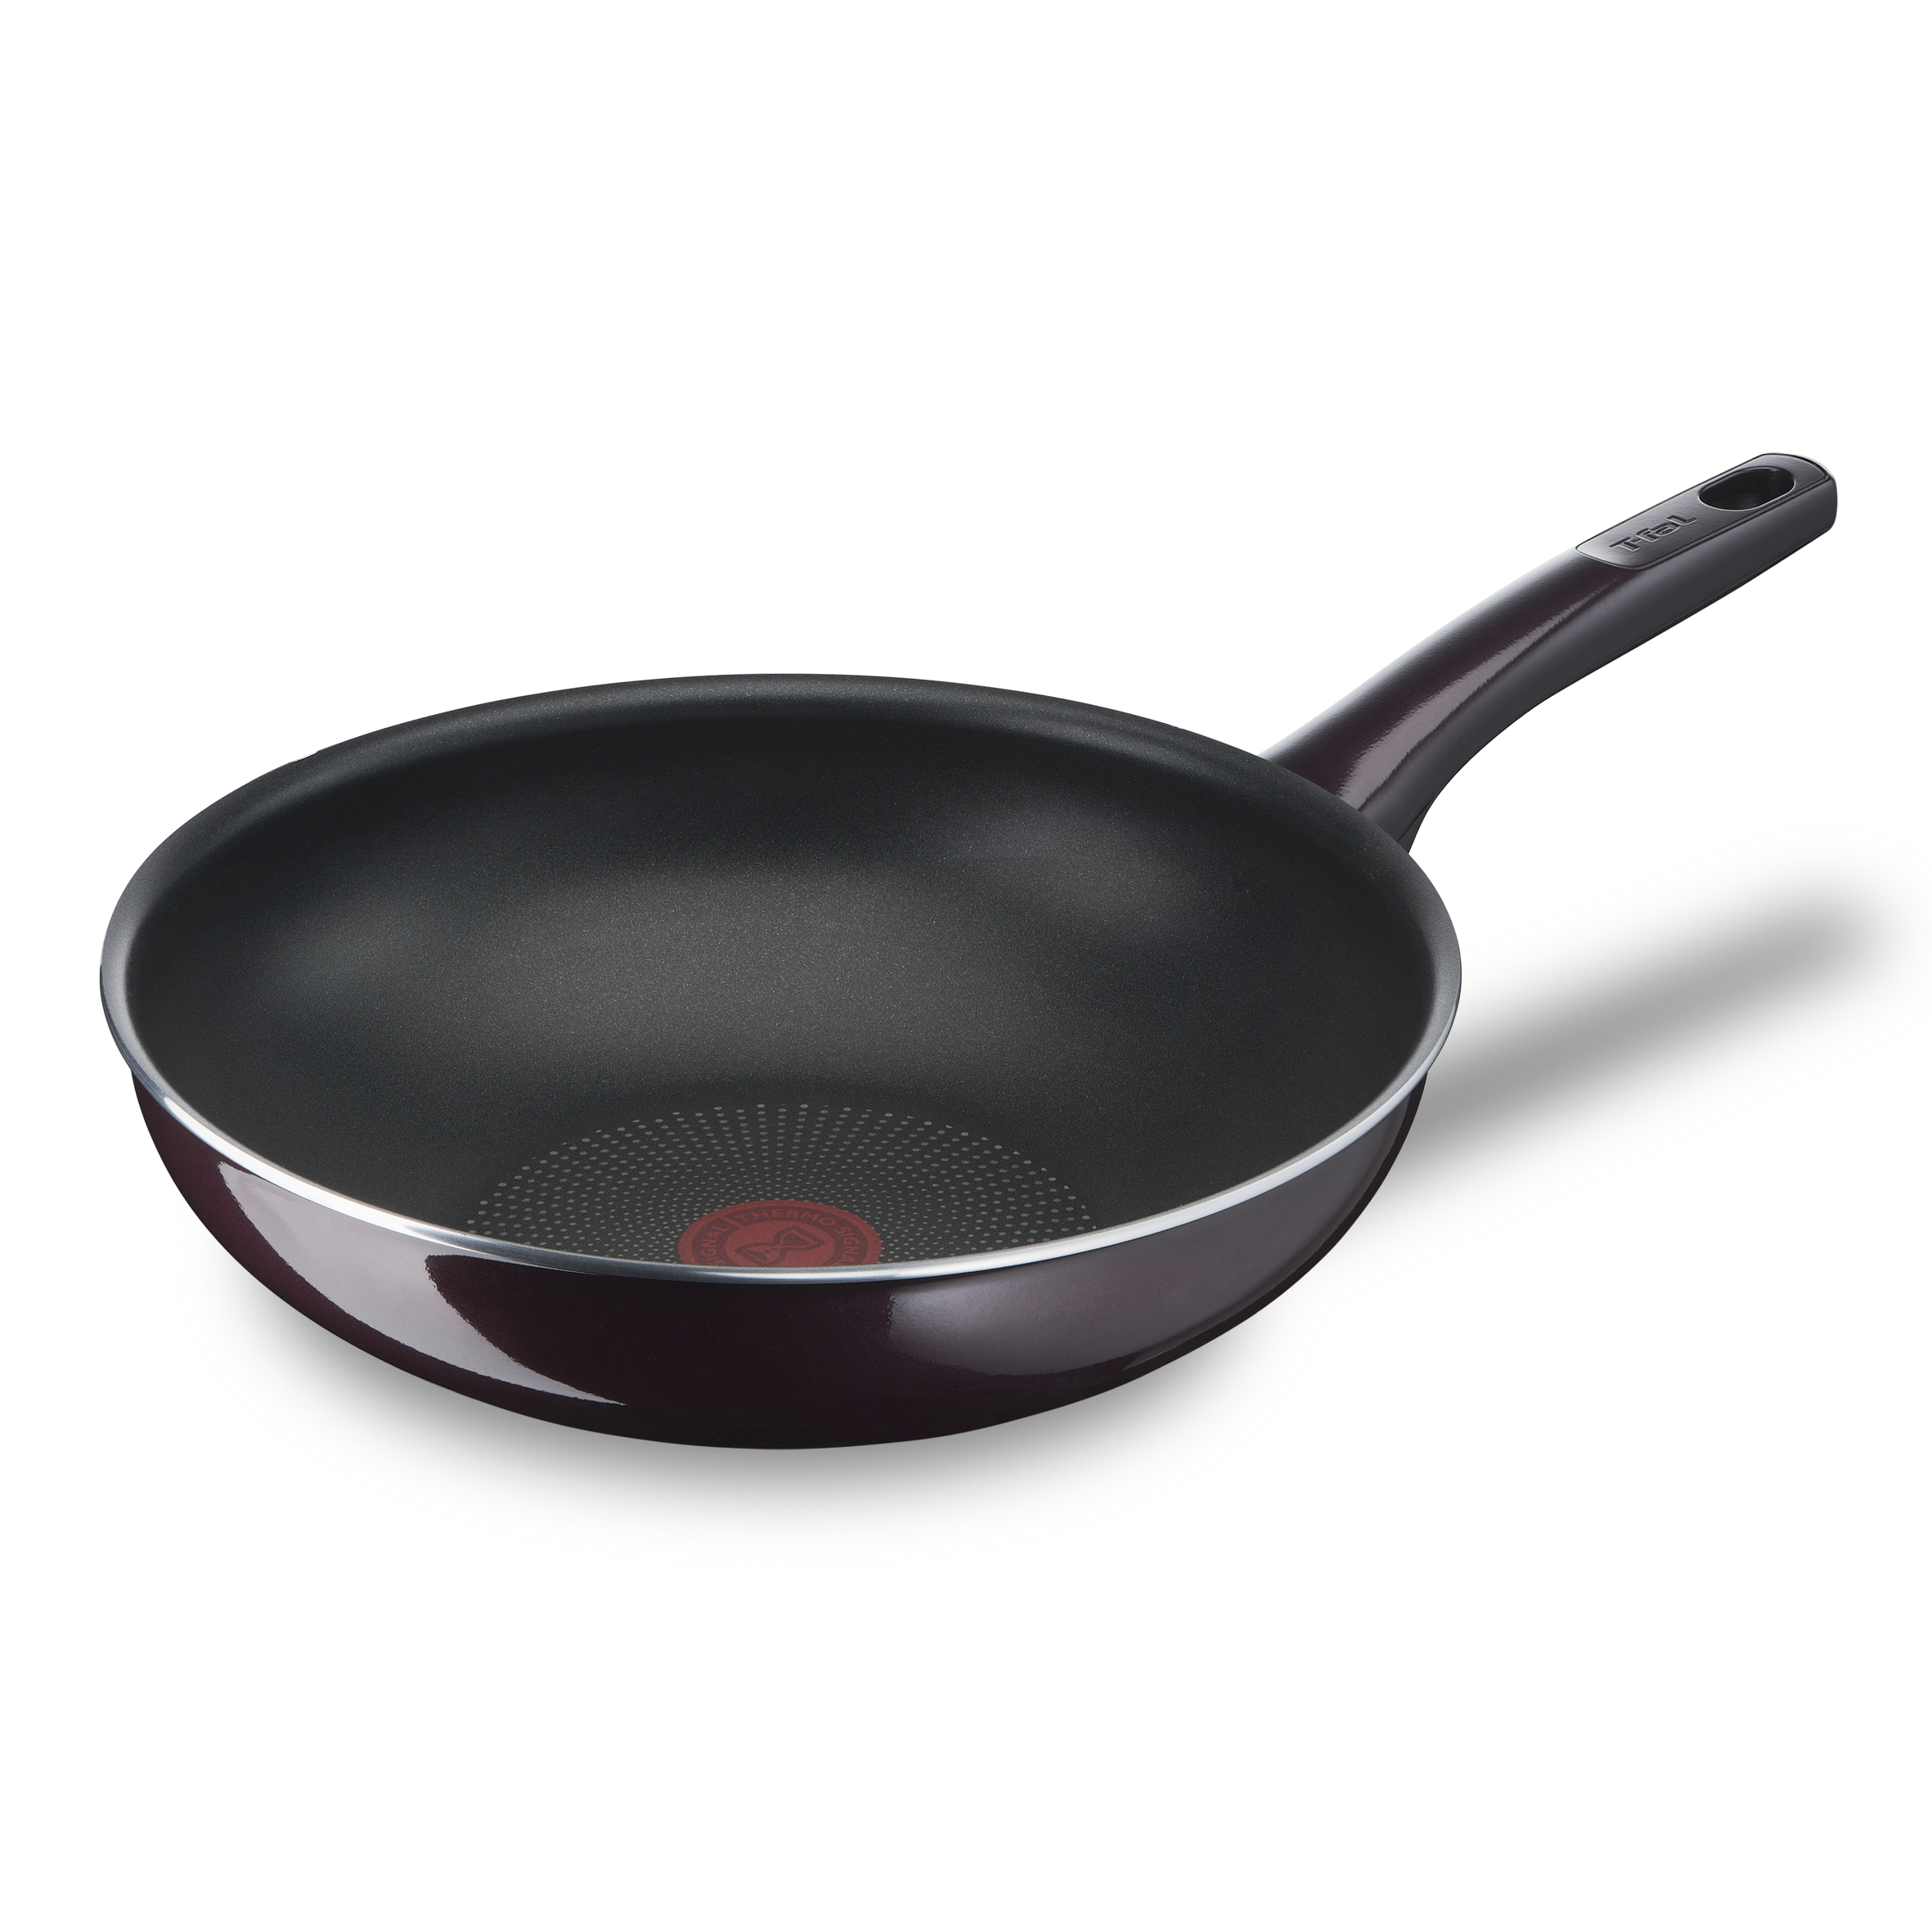 Tefal Comfort Max - Sartén wok 28 cm antiadherente, acero inoxidable 18/10,  Thermo-Spot, base gruesa, cocinado homogéneo, mango ergonómico fresco